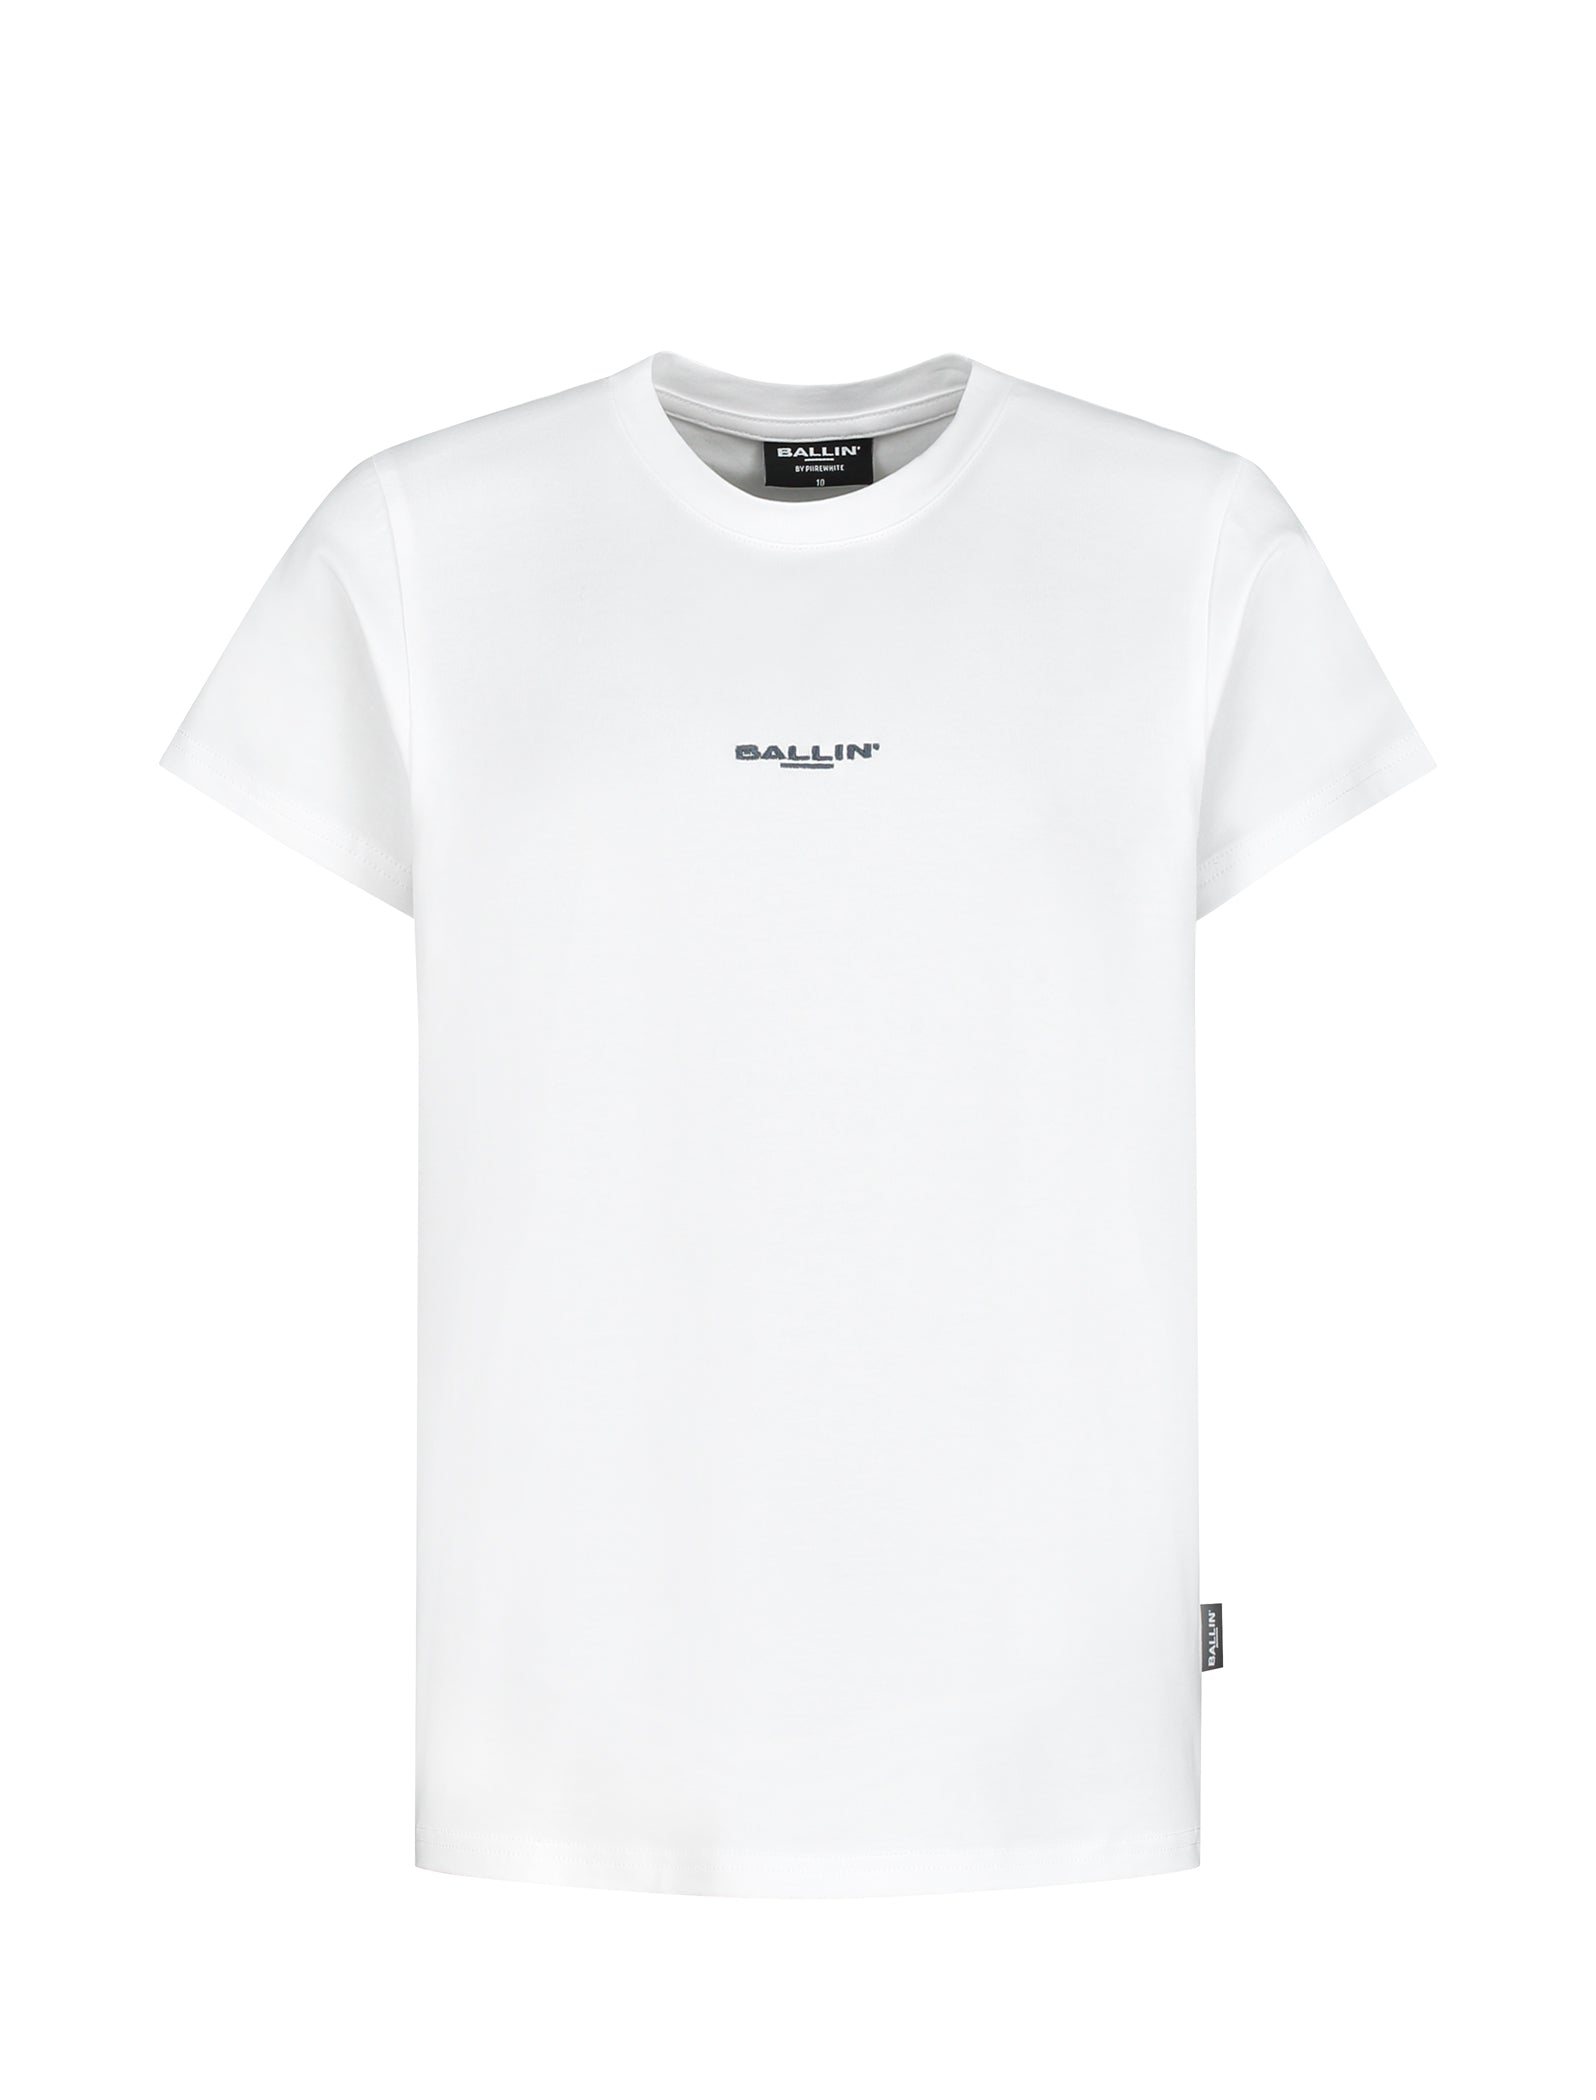 Jongens T-shirt White van Ballin in de kleur White in maat 176.